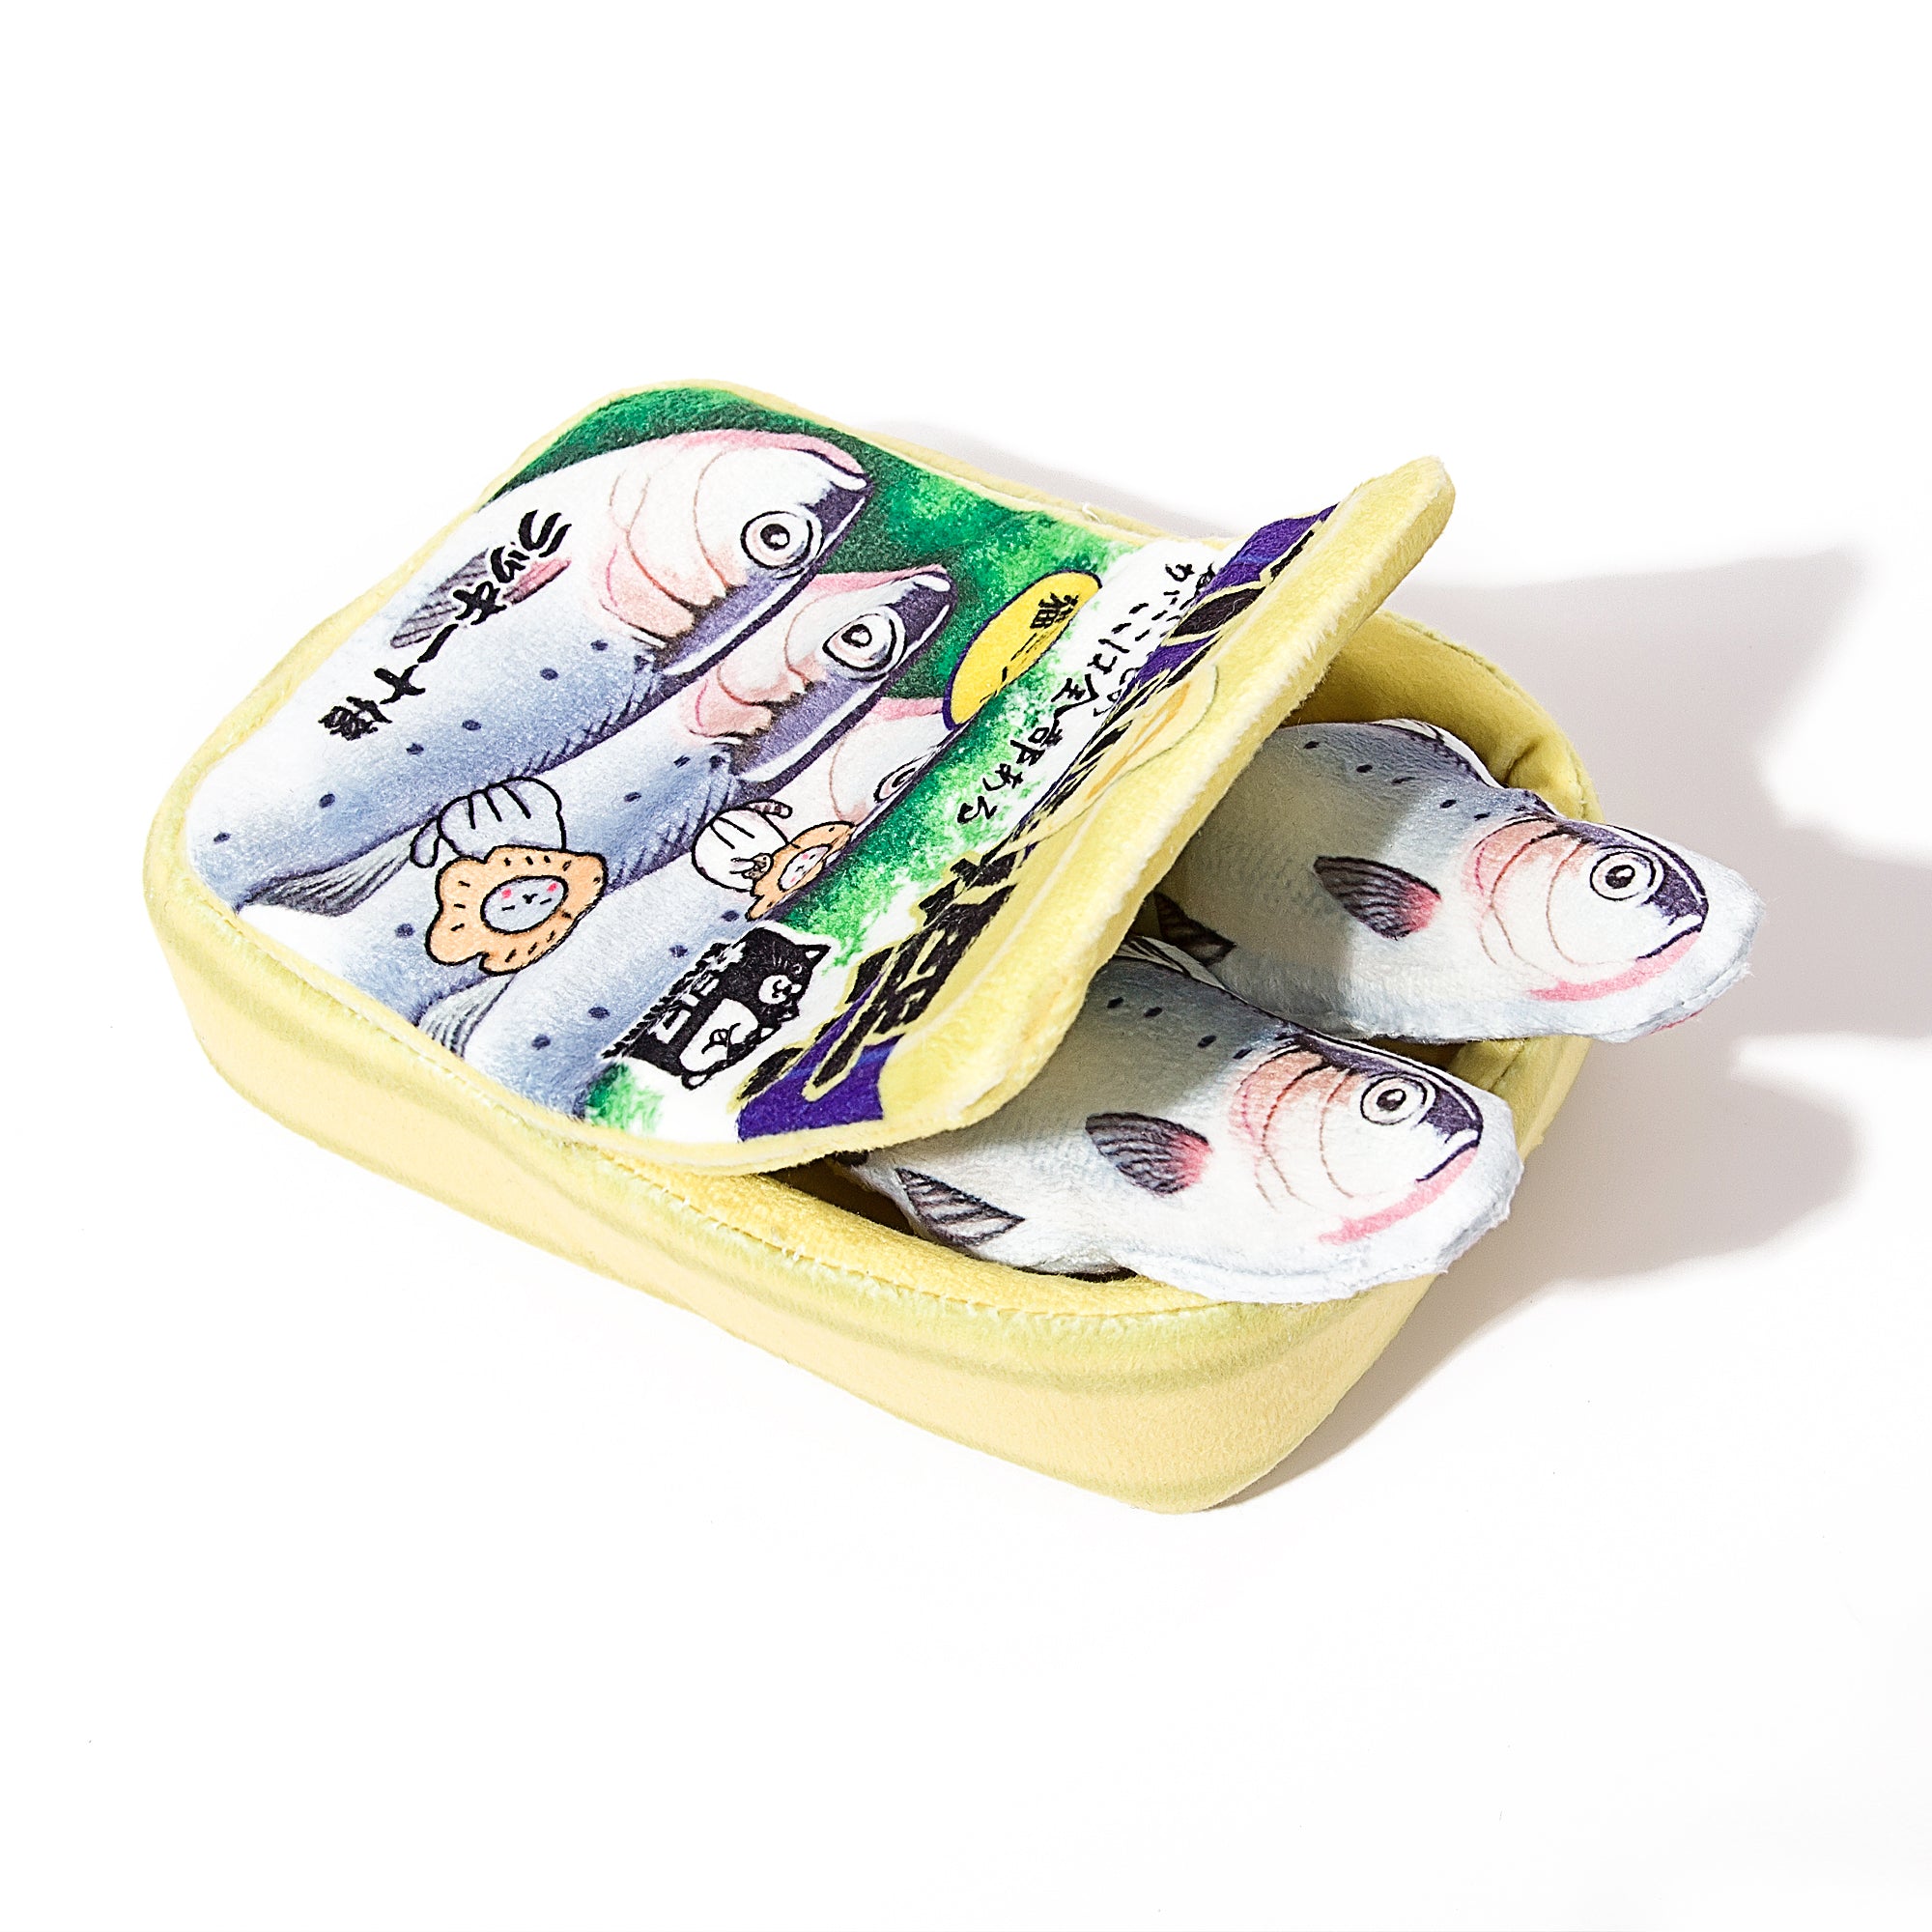 Kashima Canned Sardines Shaped Toy